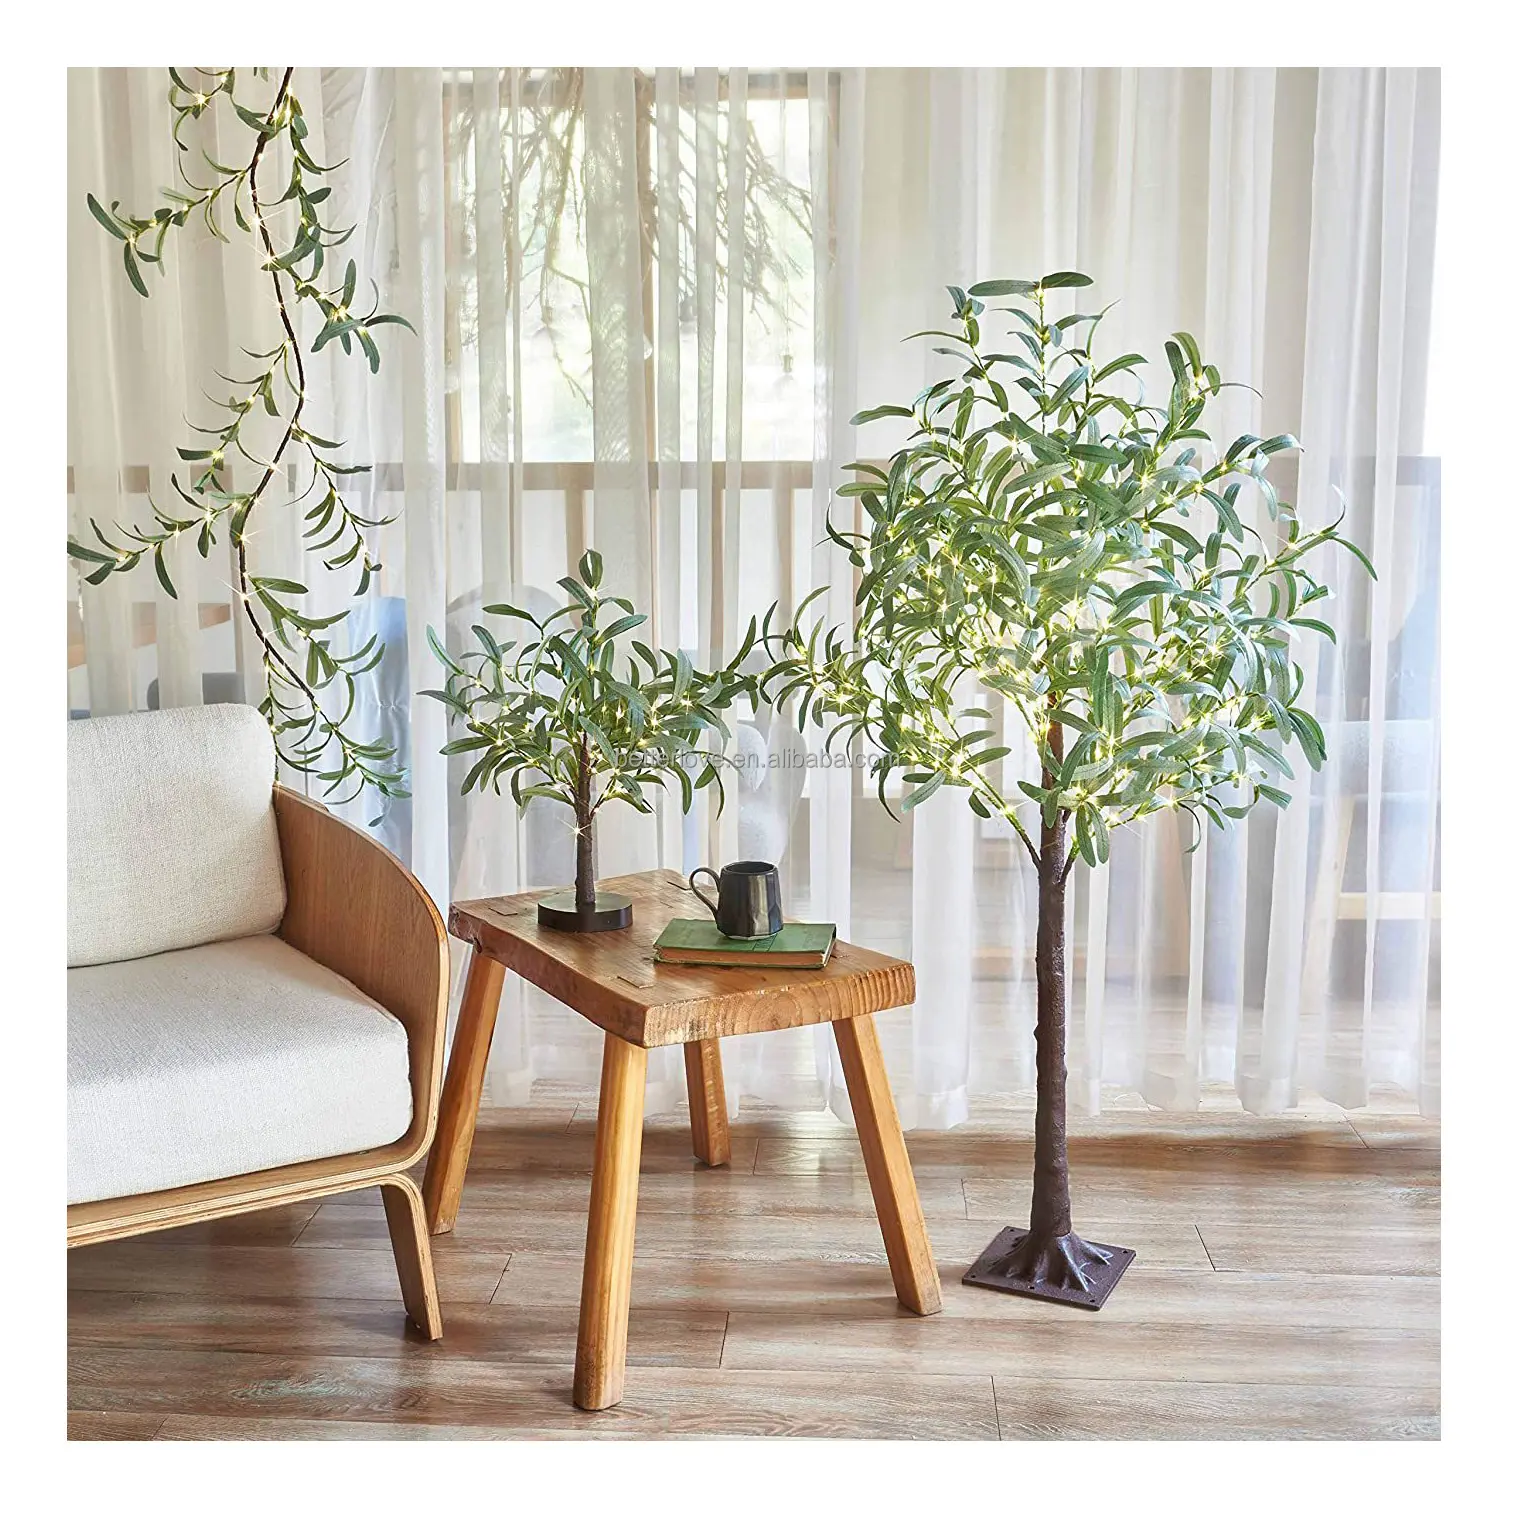 कृत्रिम जैतून का पौधा कृत्रिम पौधा जैतून कृत्रिम जैतून का पेड़ हल्की सजावट के साथ 6 फीट लंबा कृत्रिम रेशम का पौधा